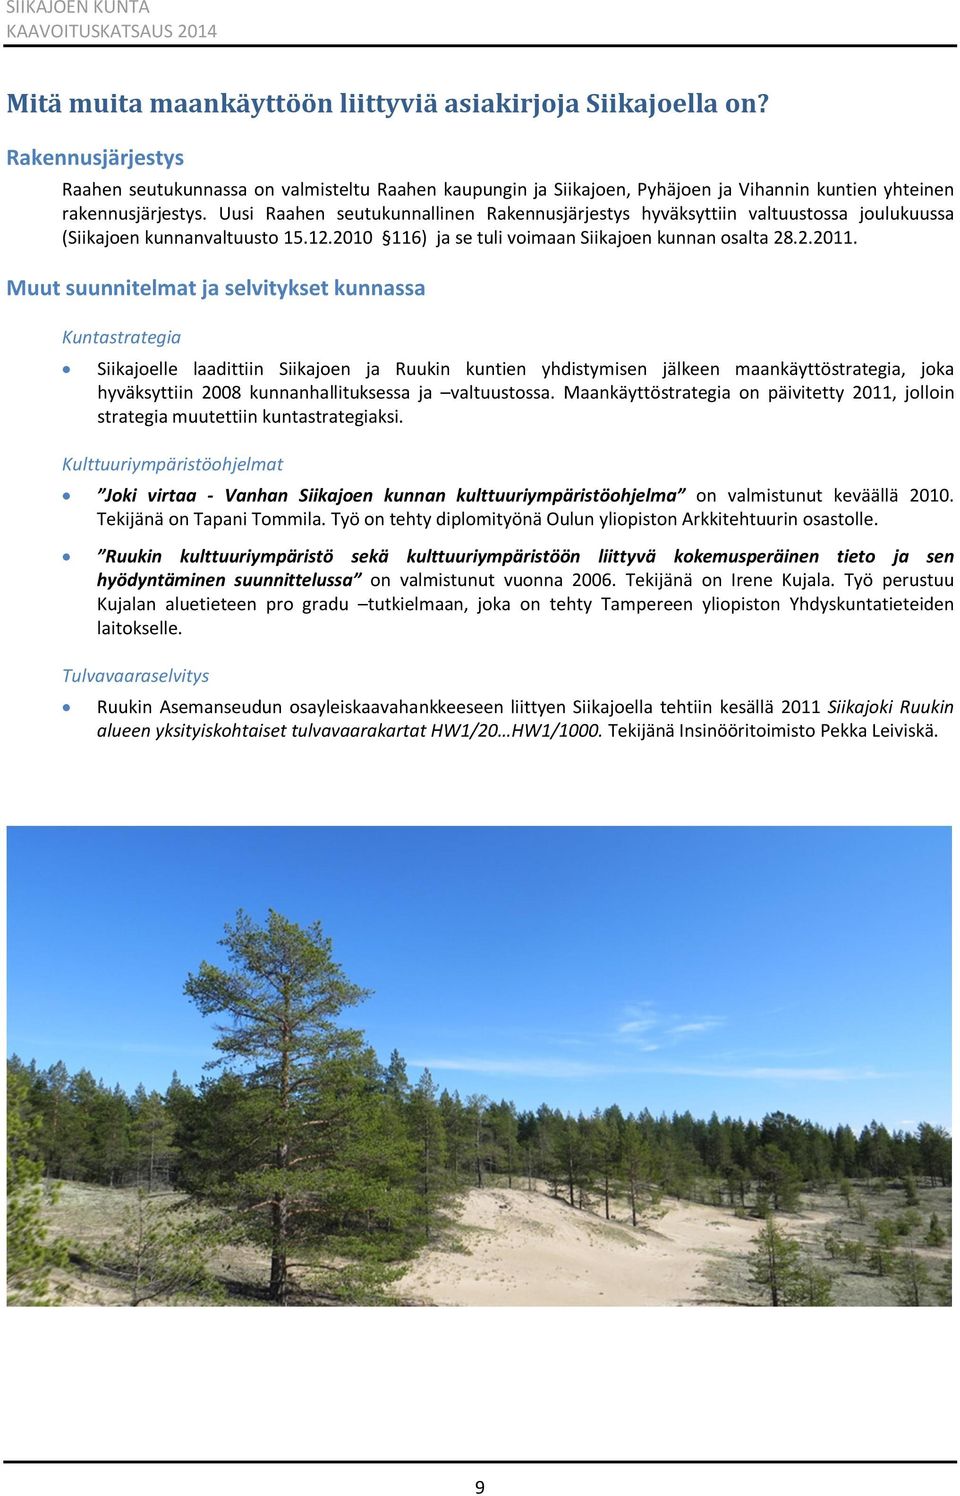 Uusi Raahen seutukunnallinen Rakennusjärjestys hyväksyttiin valtuustossa joulukuussa (Siikajoen kunnanvaltuusto 15.12.2010 116) ja se tuli voimaan Siikajoen kunnan osalta 28.2.2011.